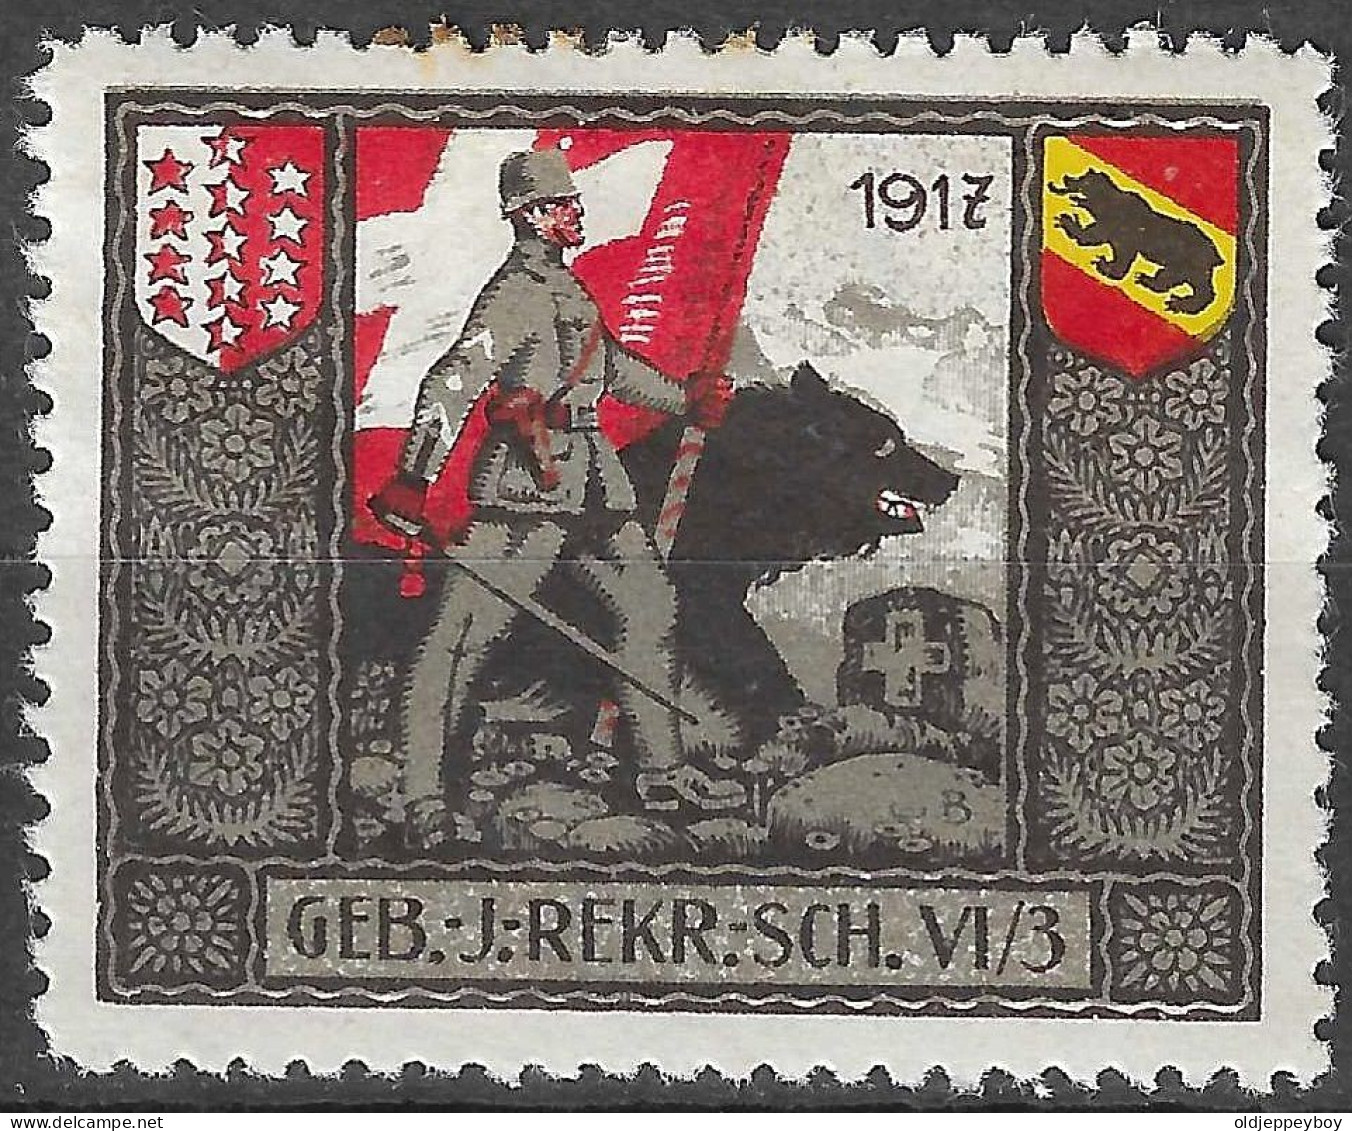 1914-1918 SWITZERLAND Soldatenmarken Suisse Militaire Vignette 1917 GEB.J.REKR.SCH.VI/3 MLH FULL GUM VF - Labels